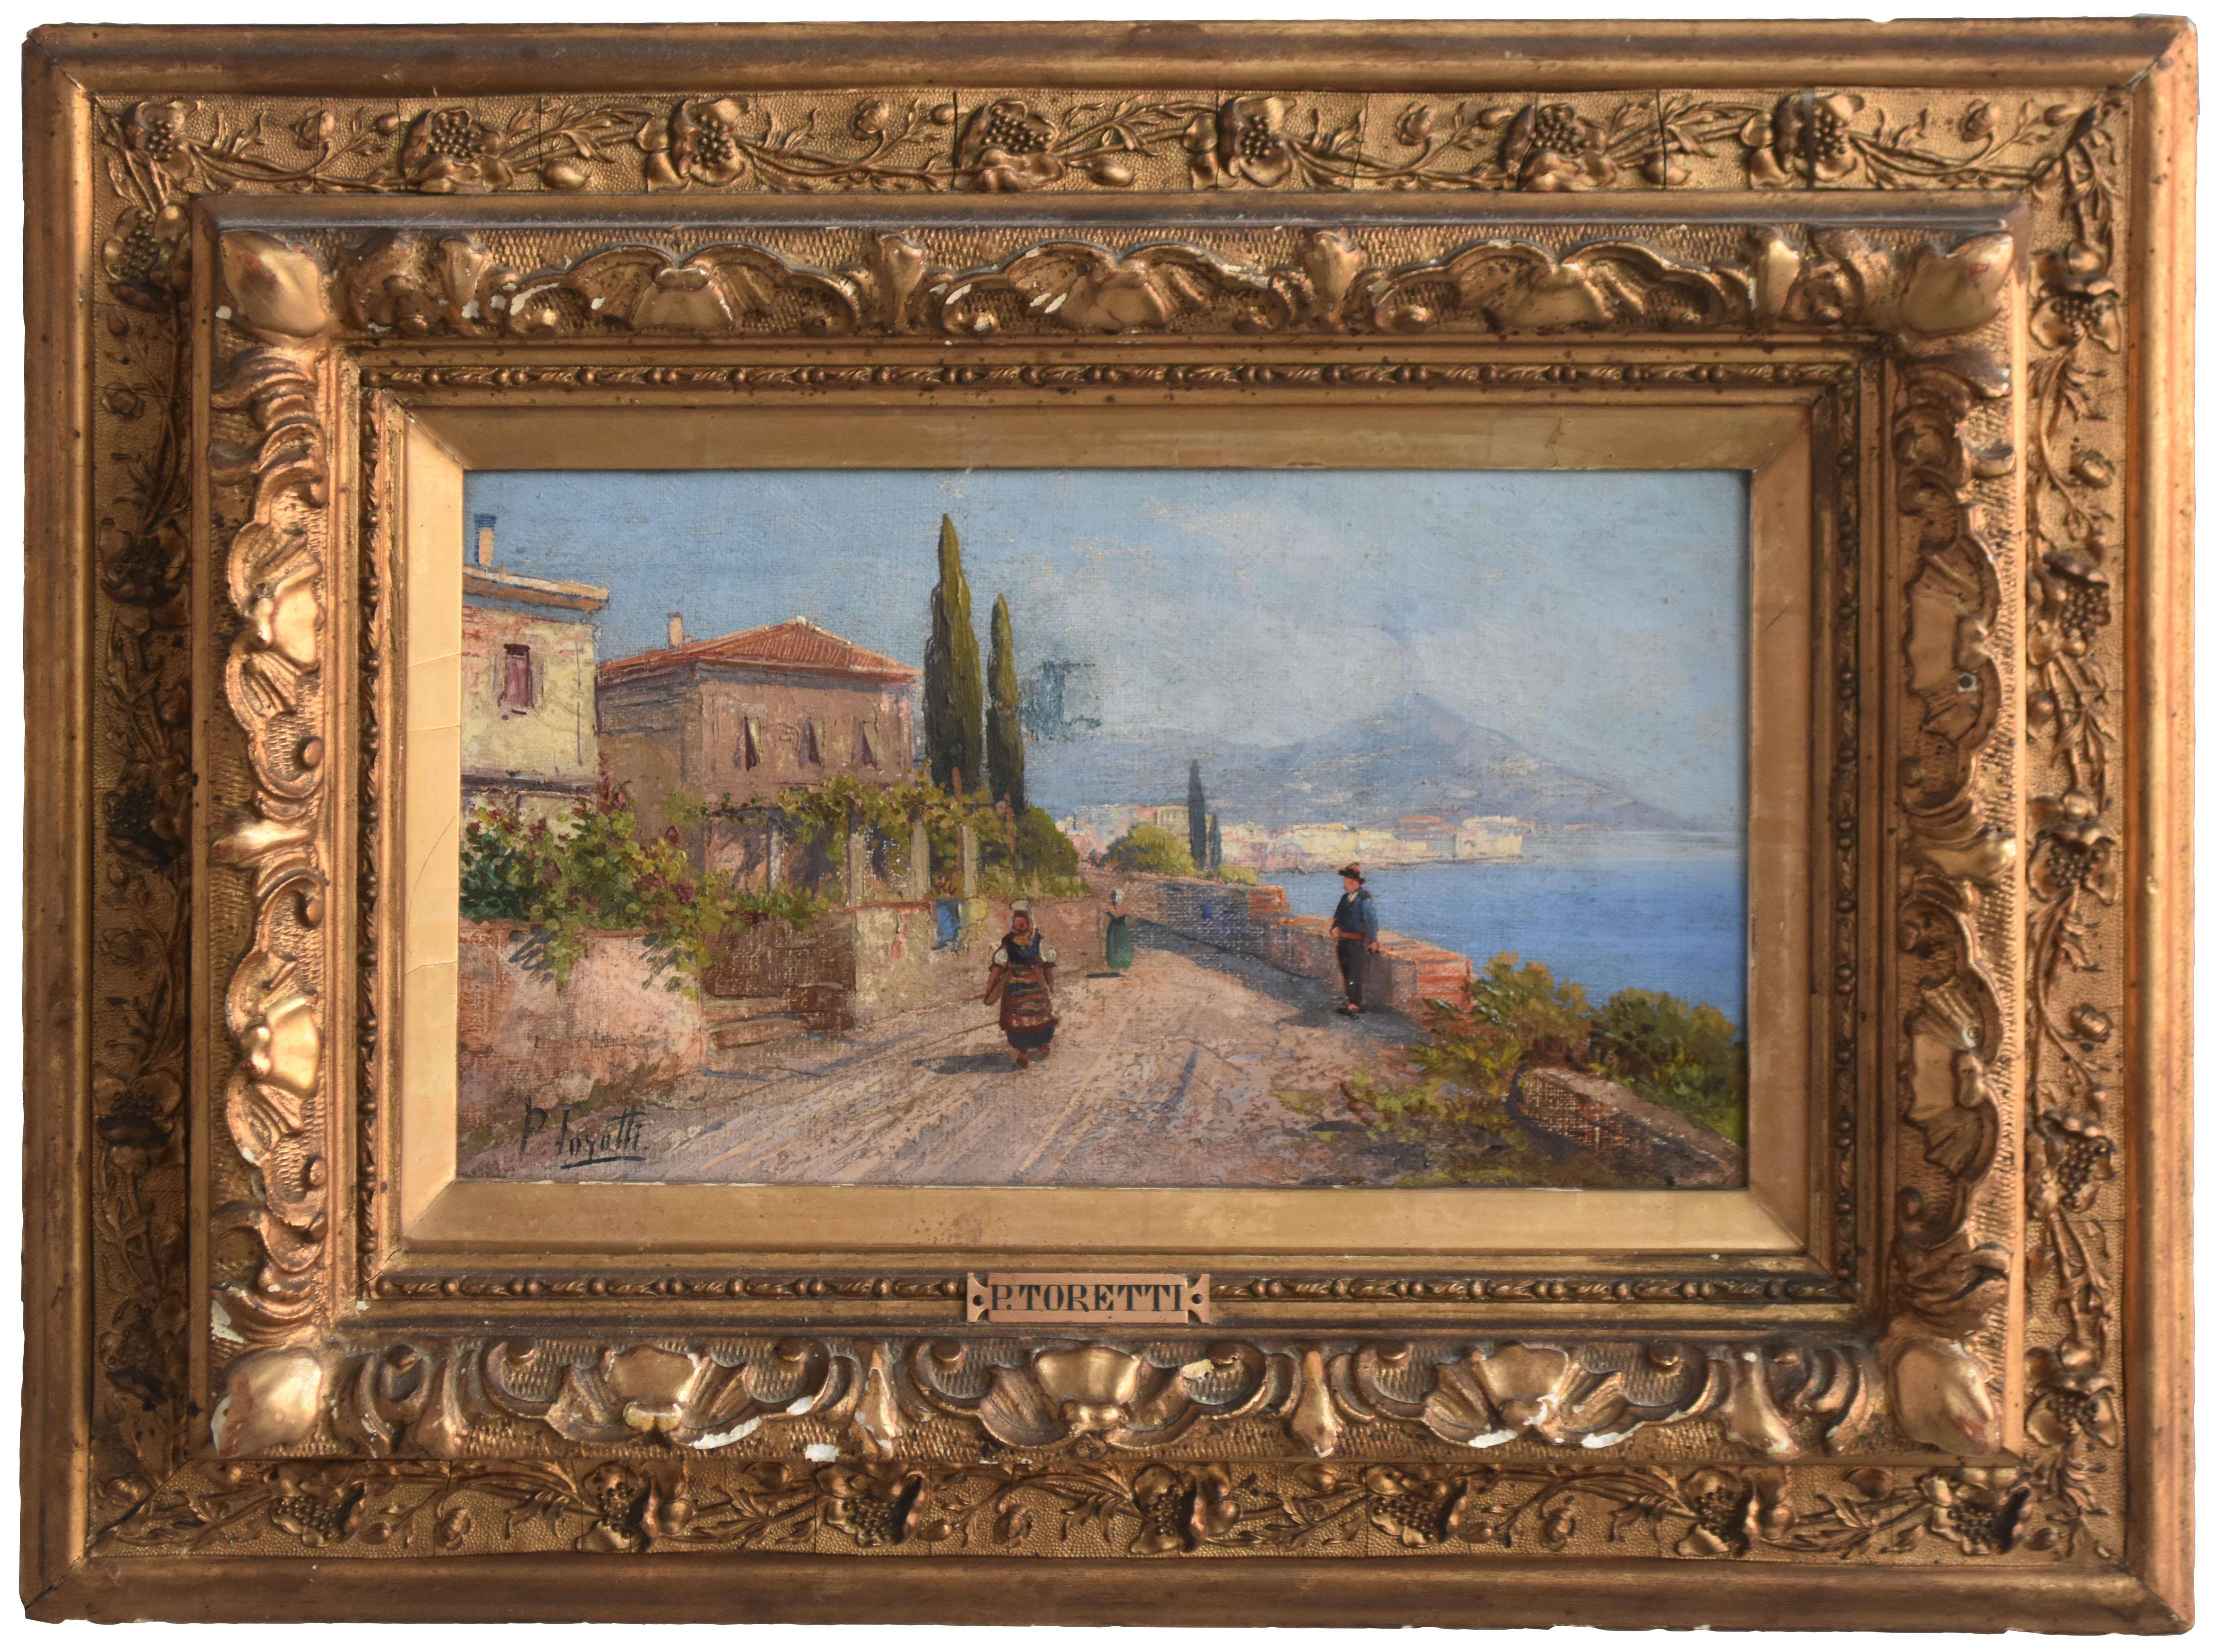 Pair of oil on canvas signed represent Italians landscape (near Vesuvius) by Pietro Toretti (1888-1927).